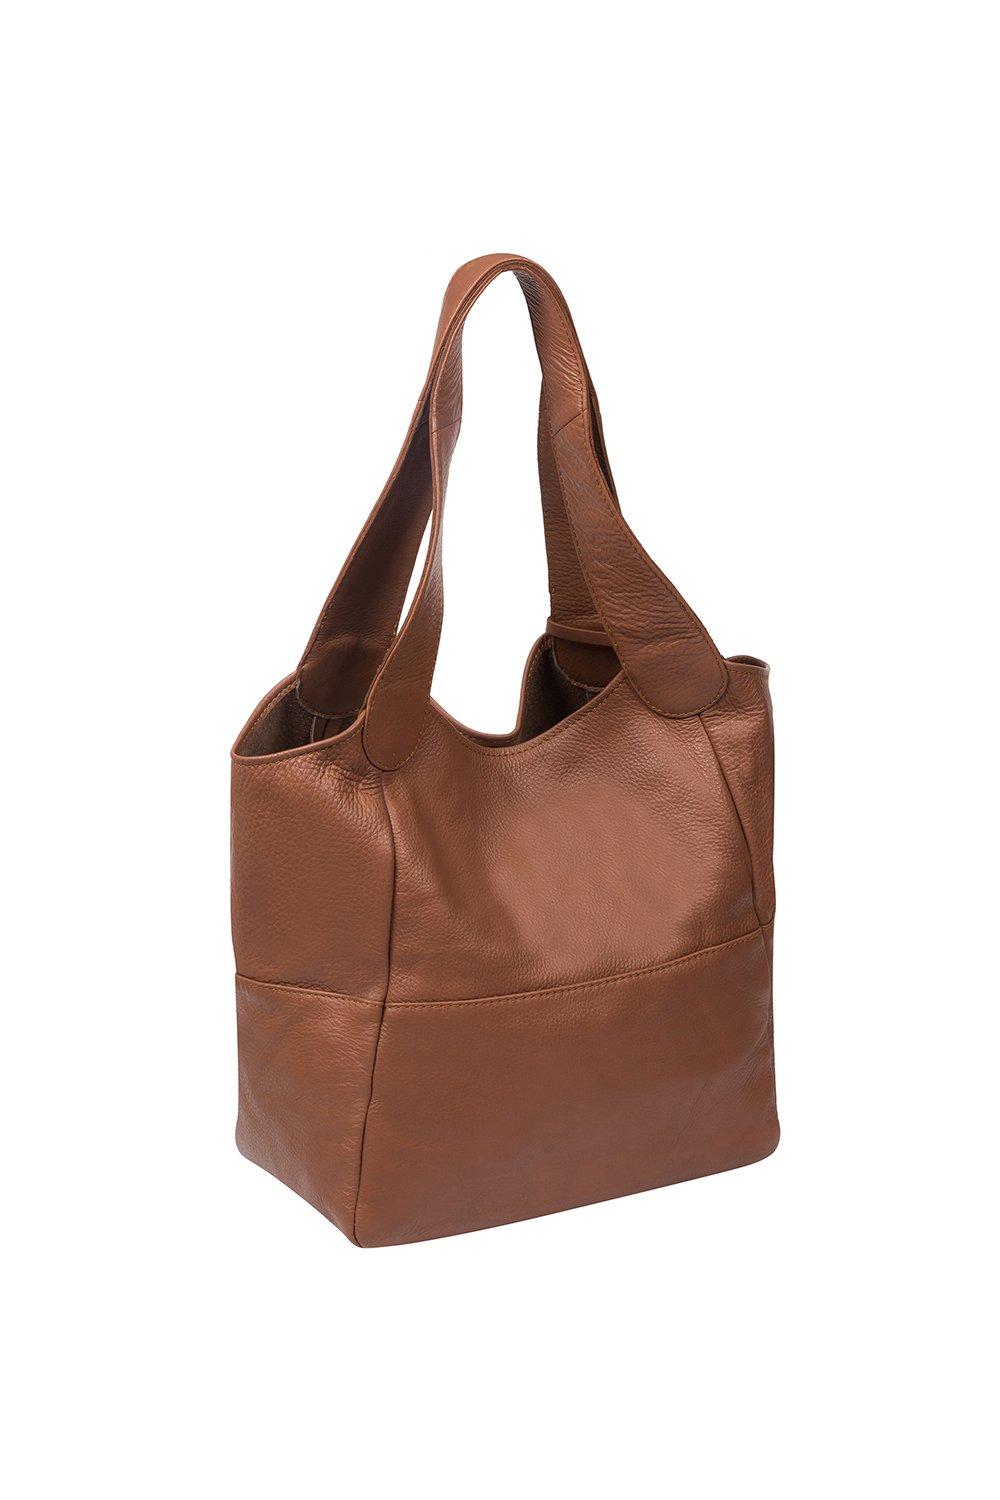 Guess Stephi Top Handle Handbag | Cilento Designer Wear